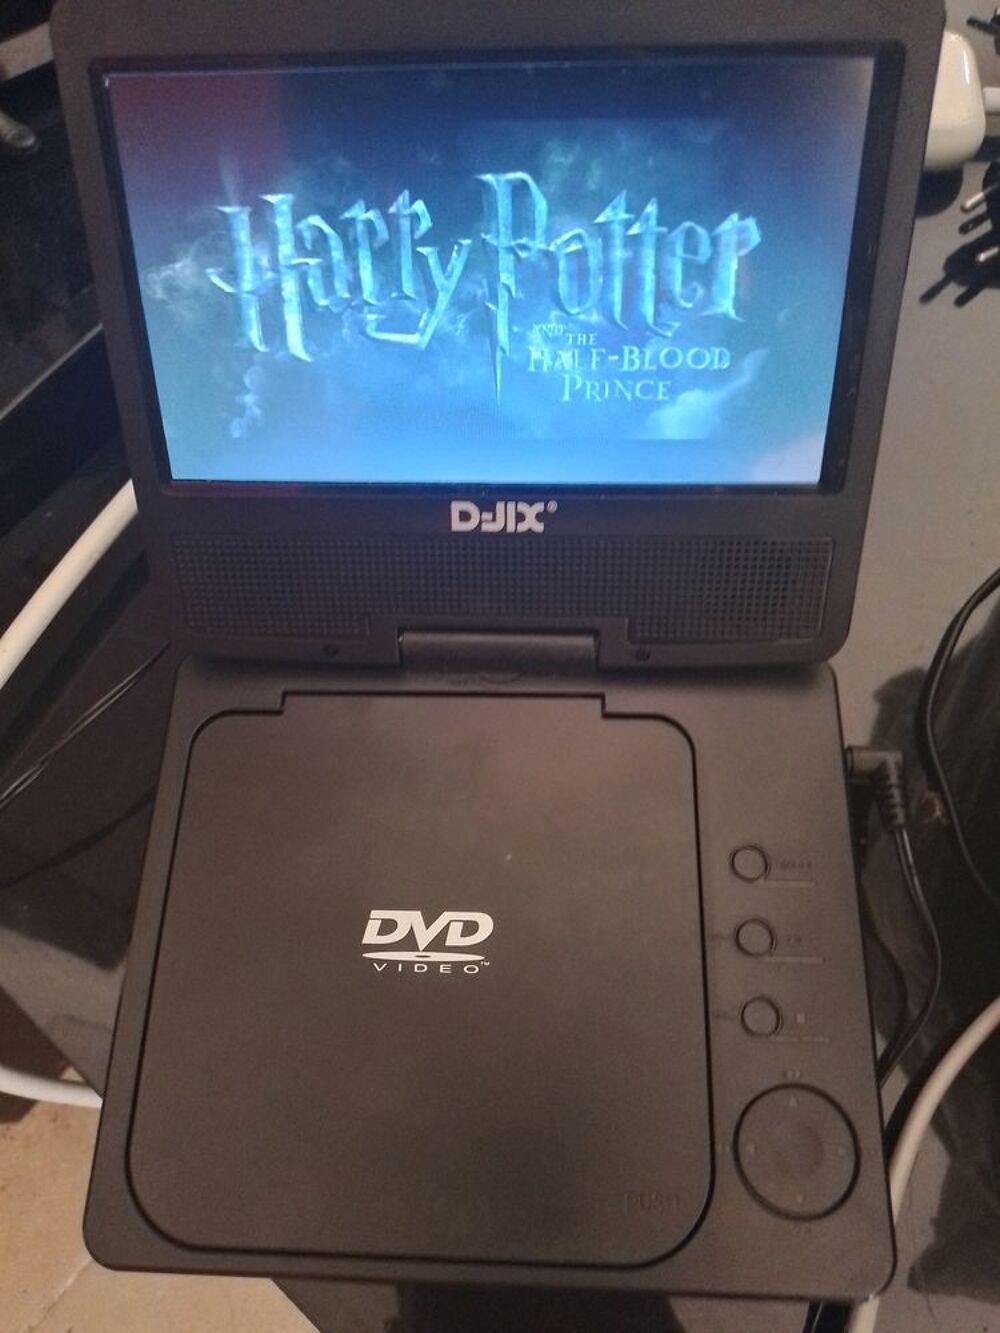 Je mon lecteur dvd portable et dvd harry potter DVD et blu-ray